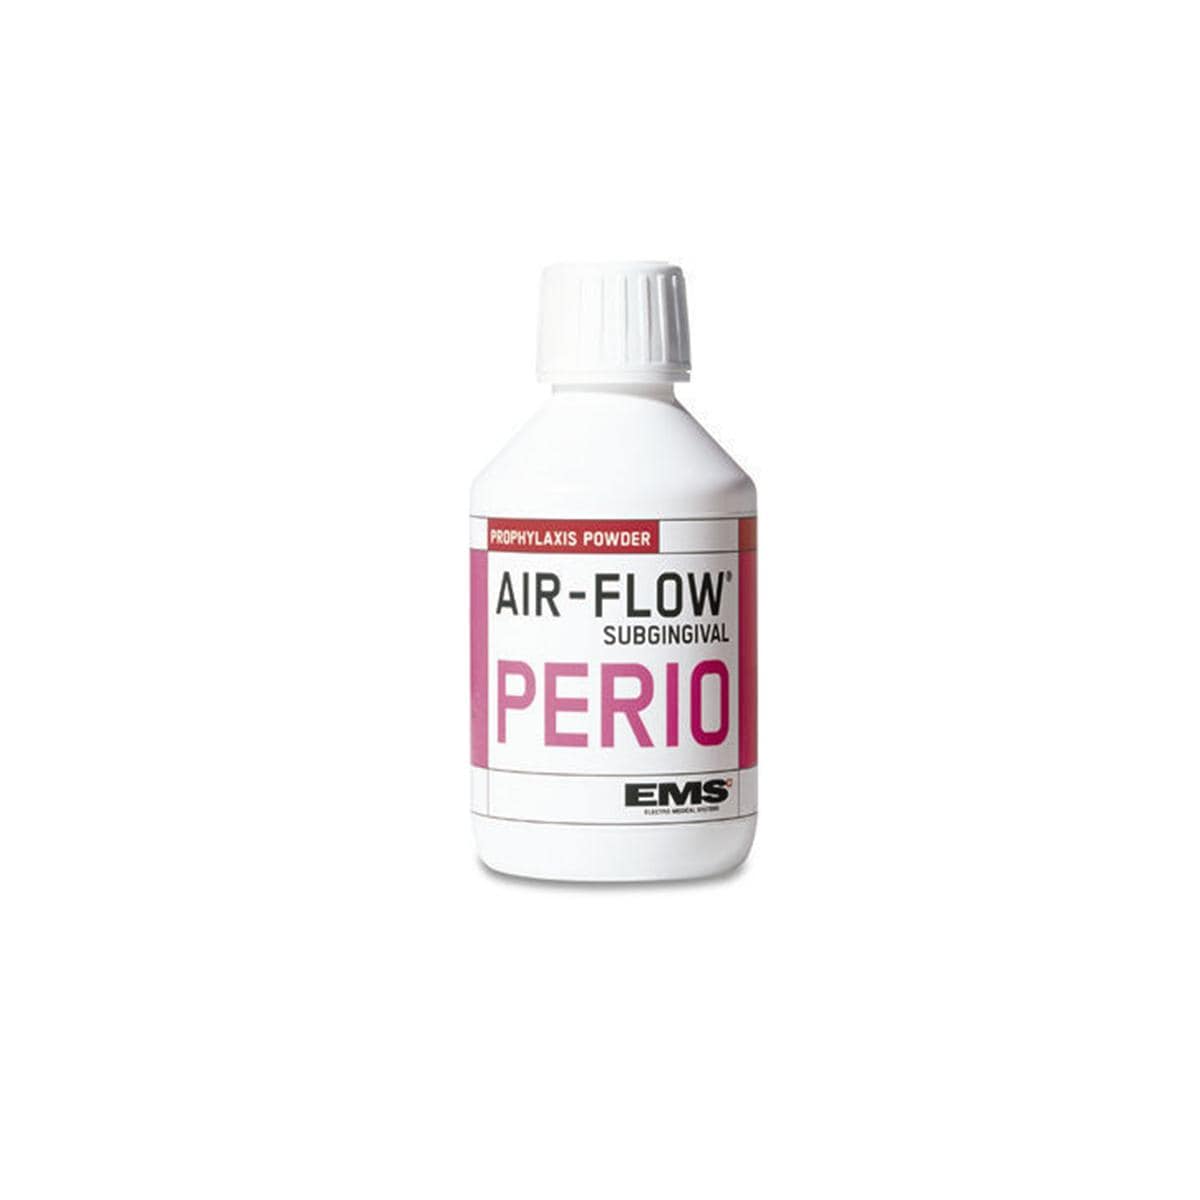 AIR-FLOW poudre PERIO - DV-070, 4x 120 g